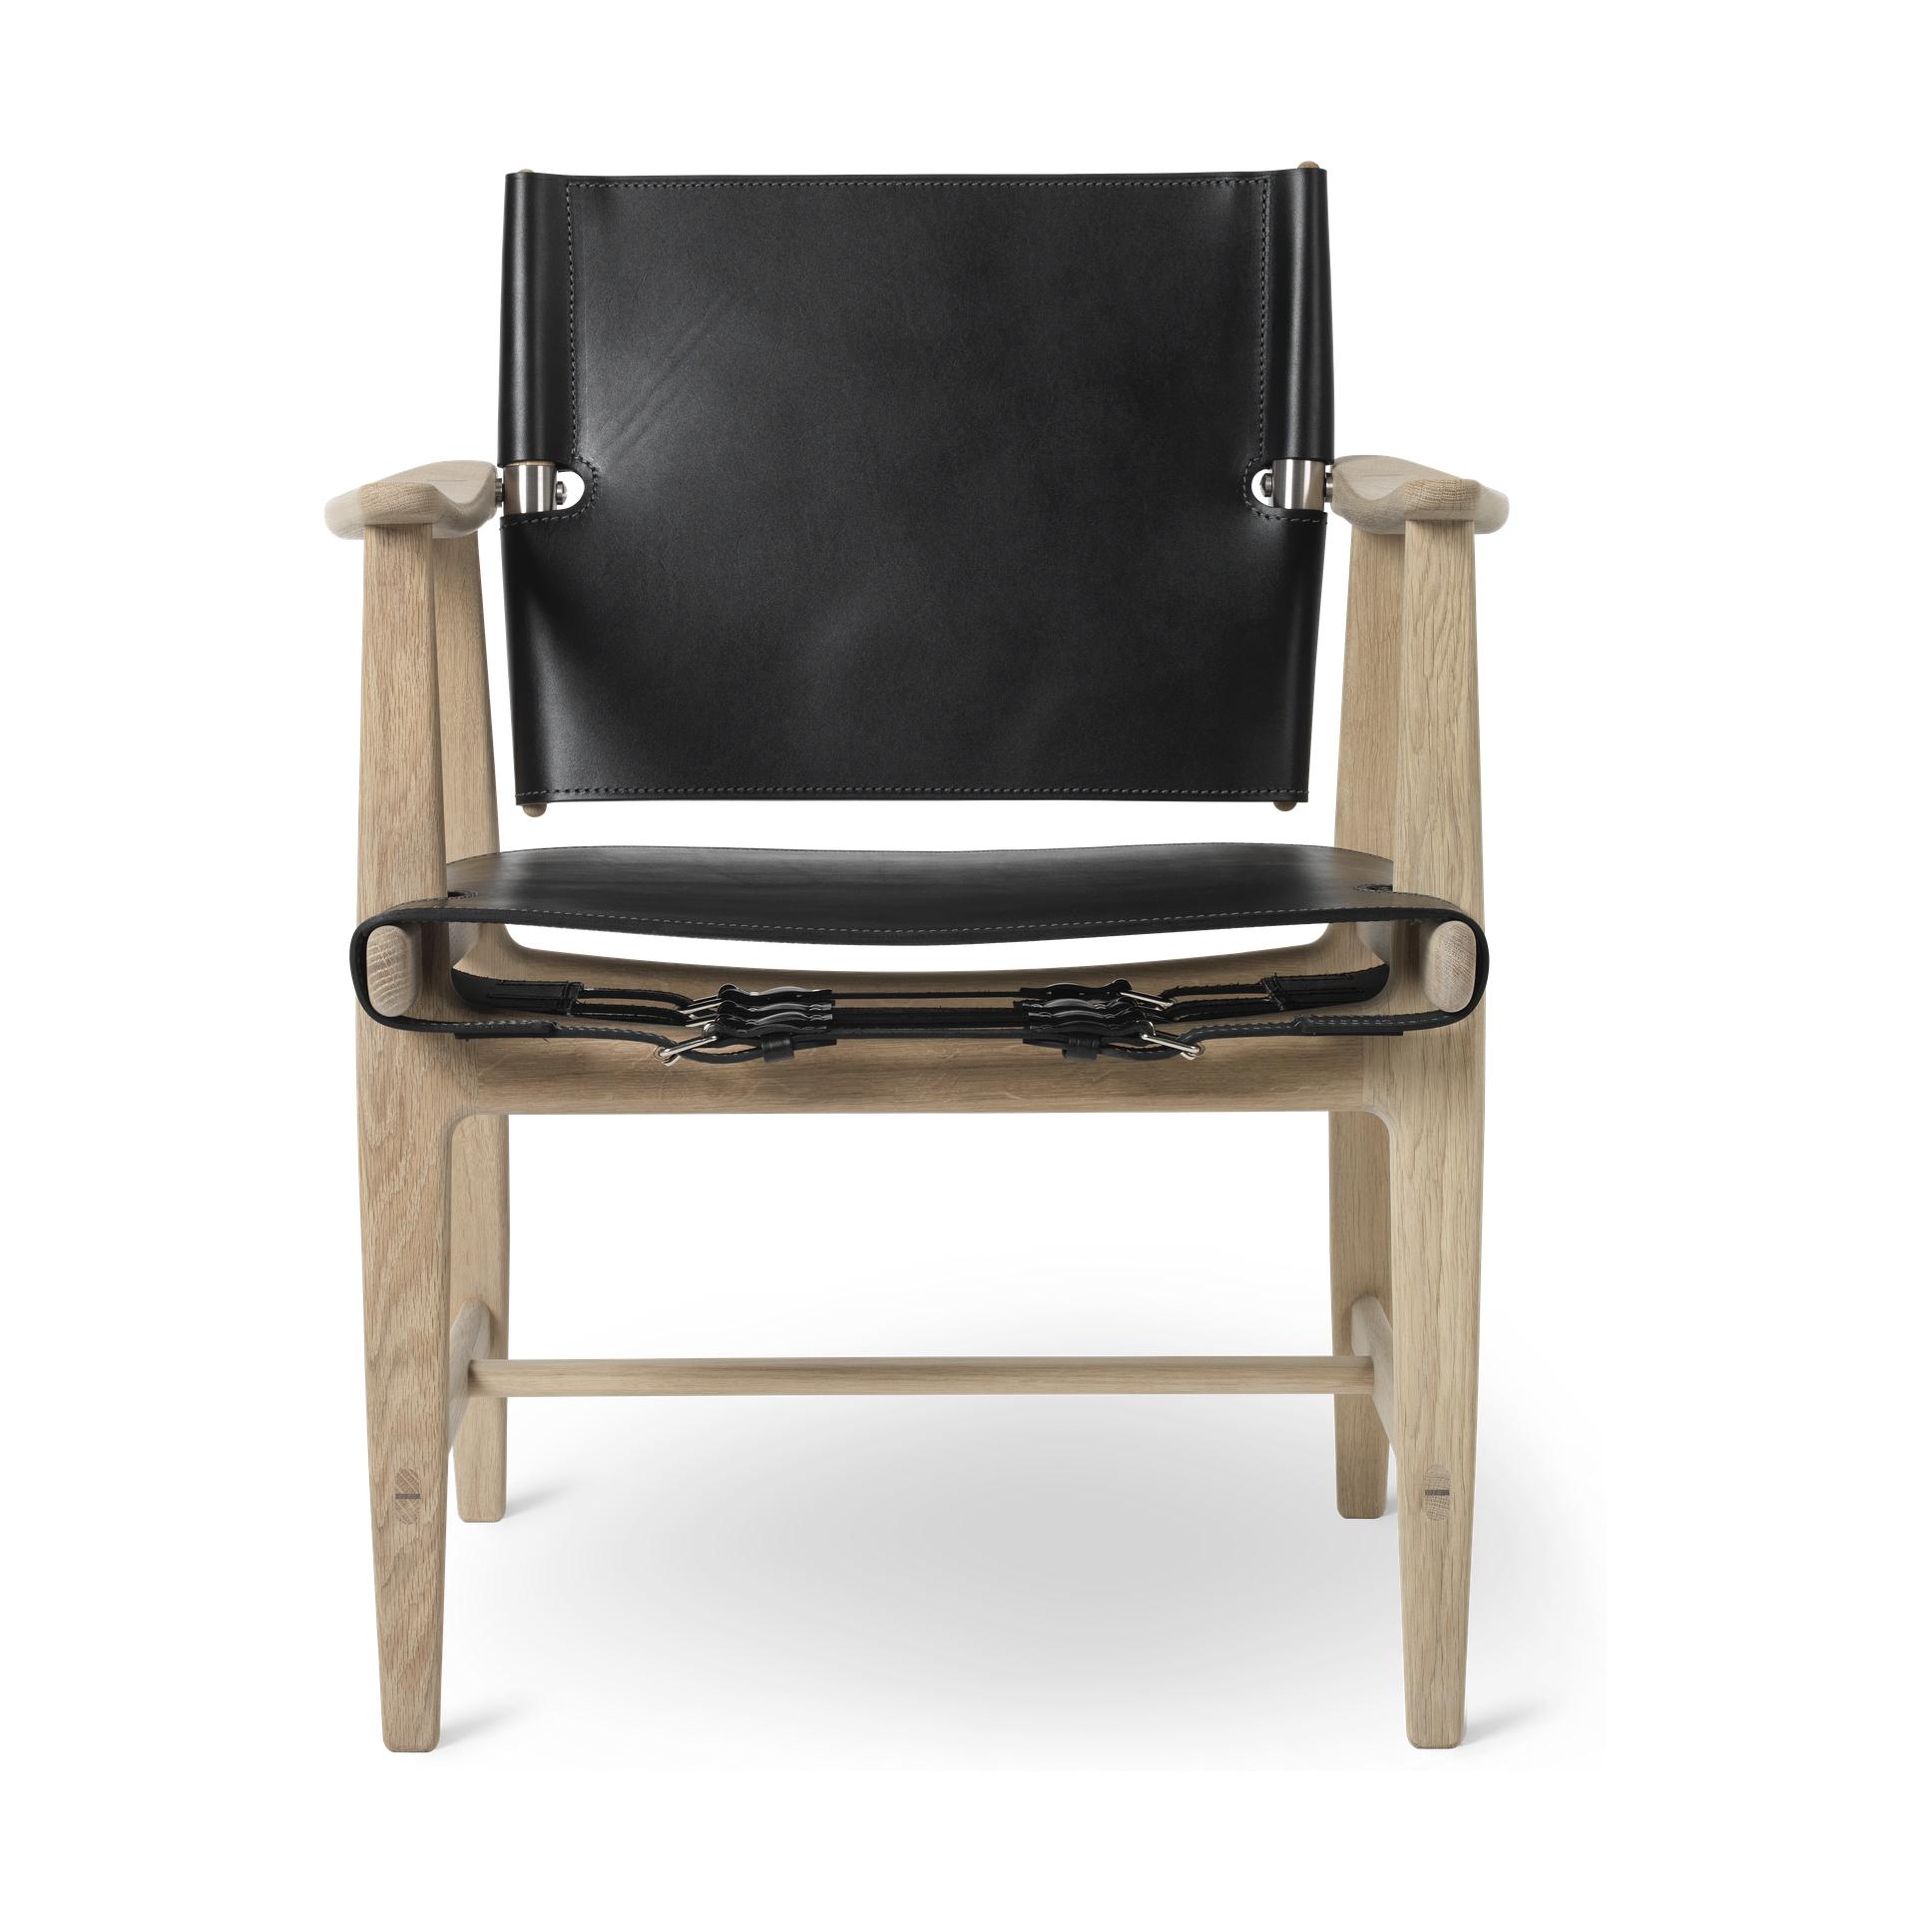 Huntsman židle Carl Hansen BM1106, bílá naolejovaná dubová/černá kůže